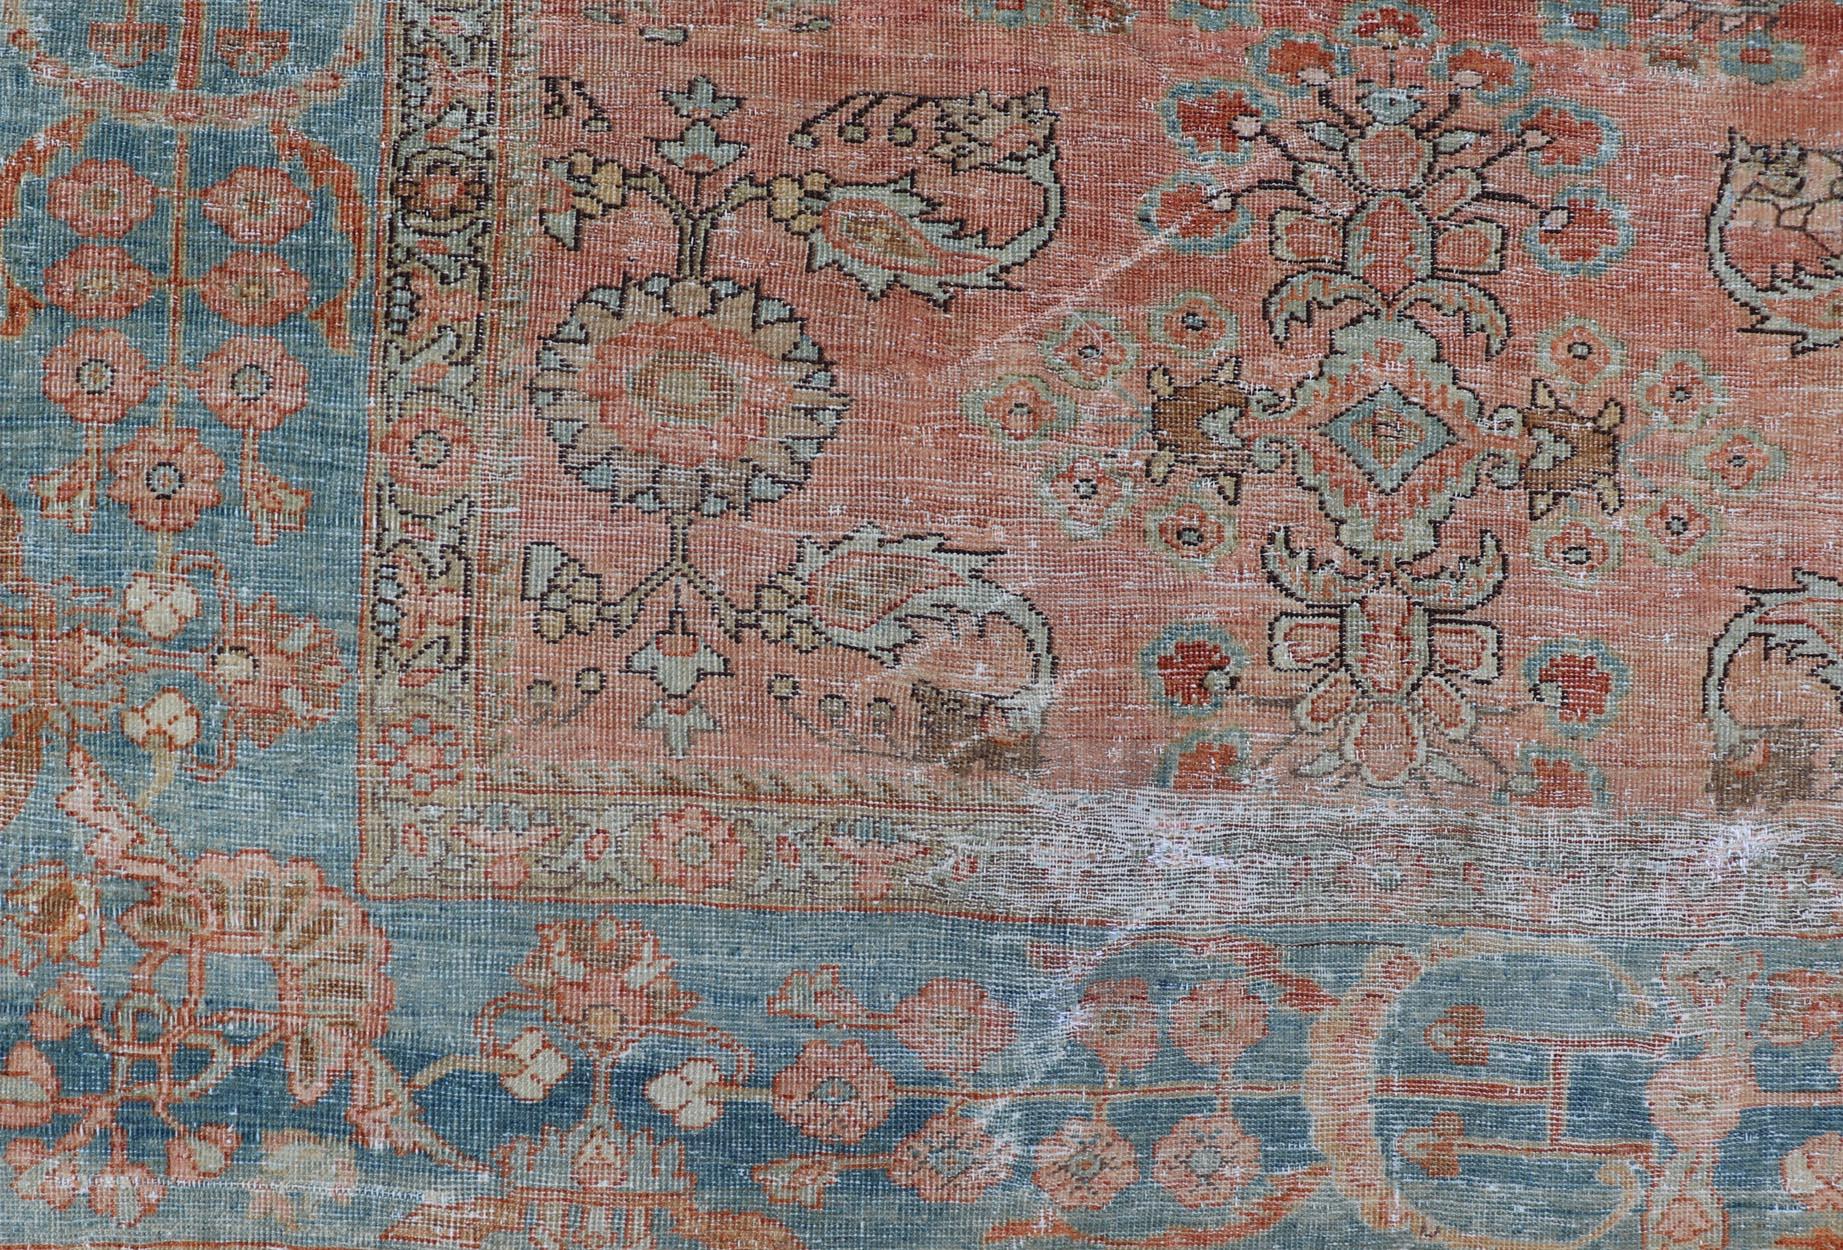 Ancien tapis persan Sultanabad Mahal de couleur sourde avec un motif floral sur toute la surface. Antique Mahal Sultanabad. Keivan Woven Arts ; tapis R20-1014, pays d'origine / type : Iran / CIRCA, circa 1910.
Mesures : 9'2 x 11'11
Ce tapis persan